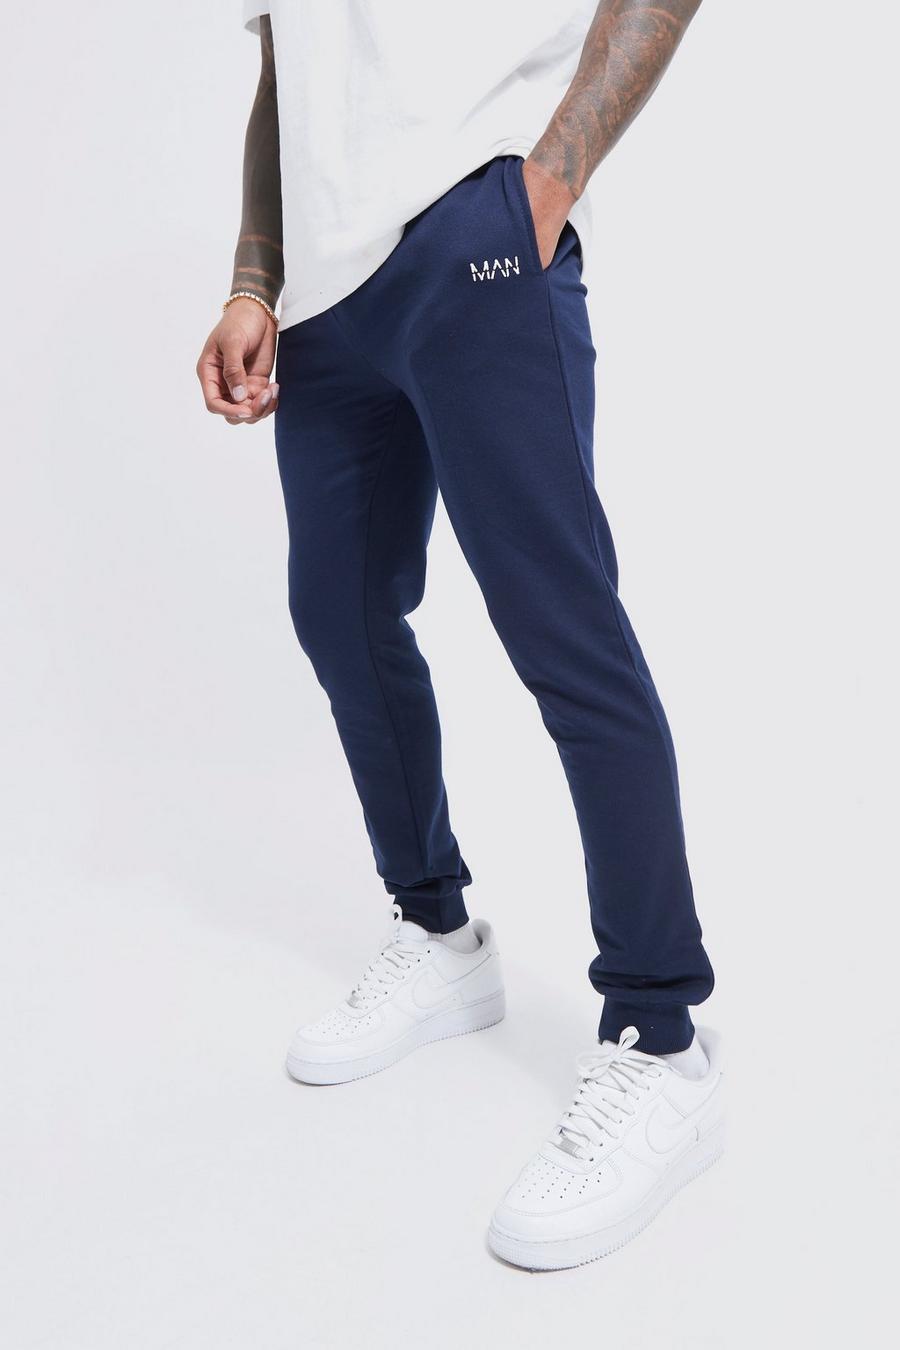 Pantalón deportivo pitillo MAN Original, Navy azul marino